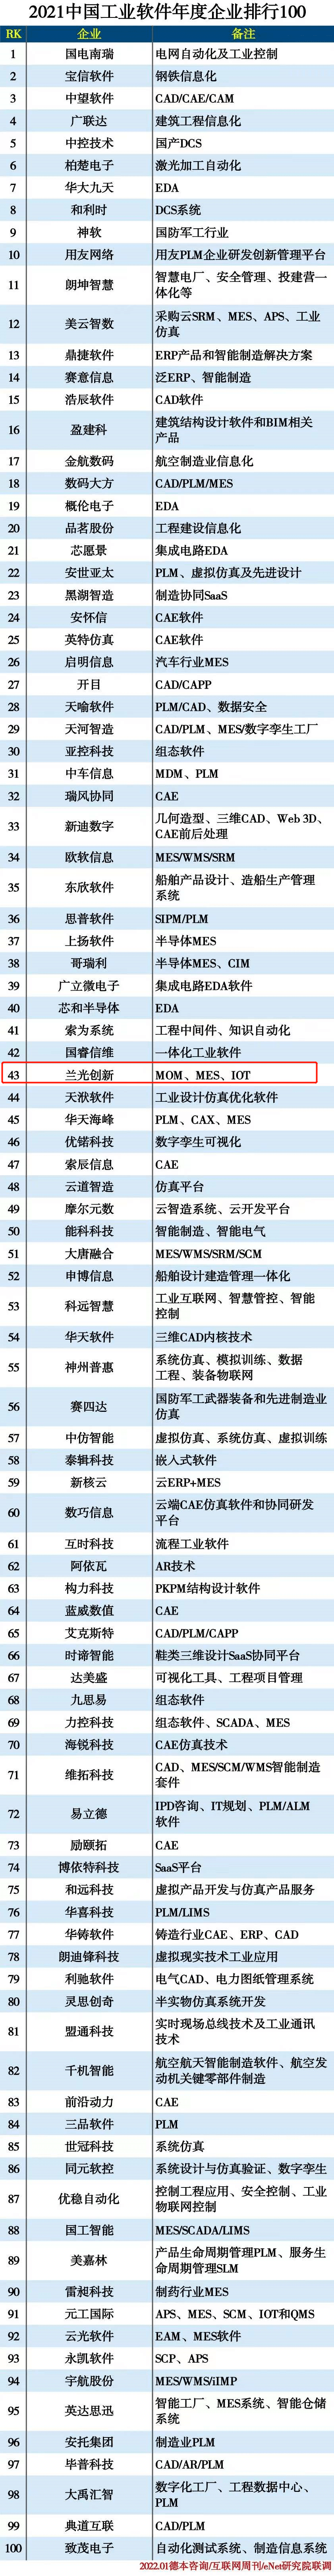 人工智能企业排行_2021年中国独角兽企业排行榜(方向标)